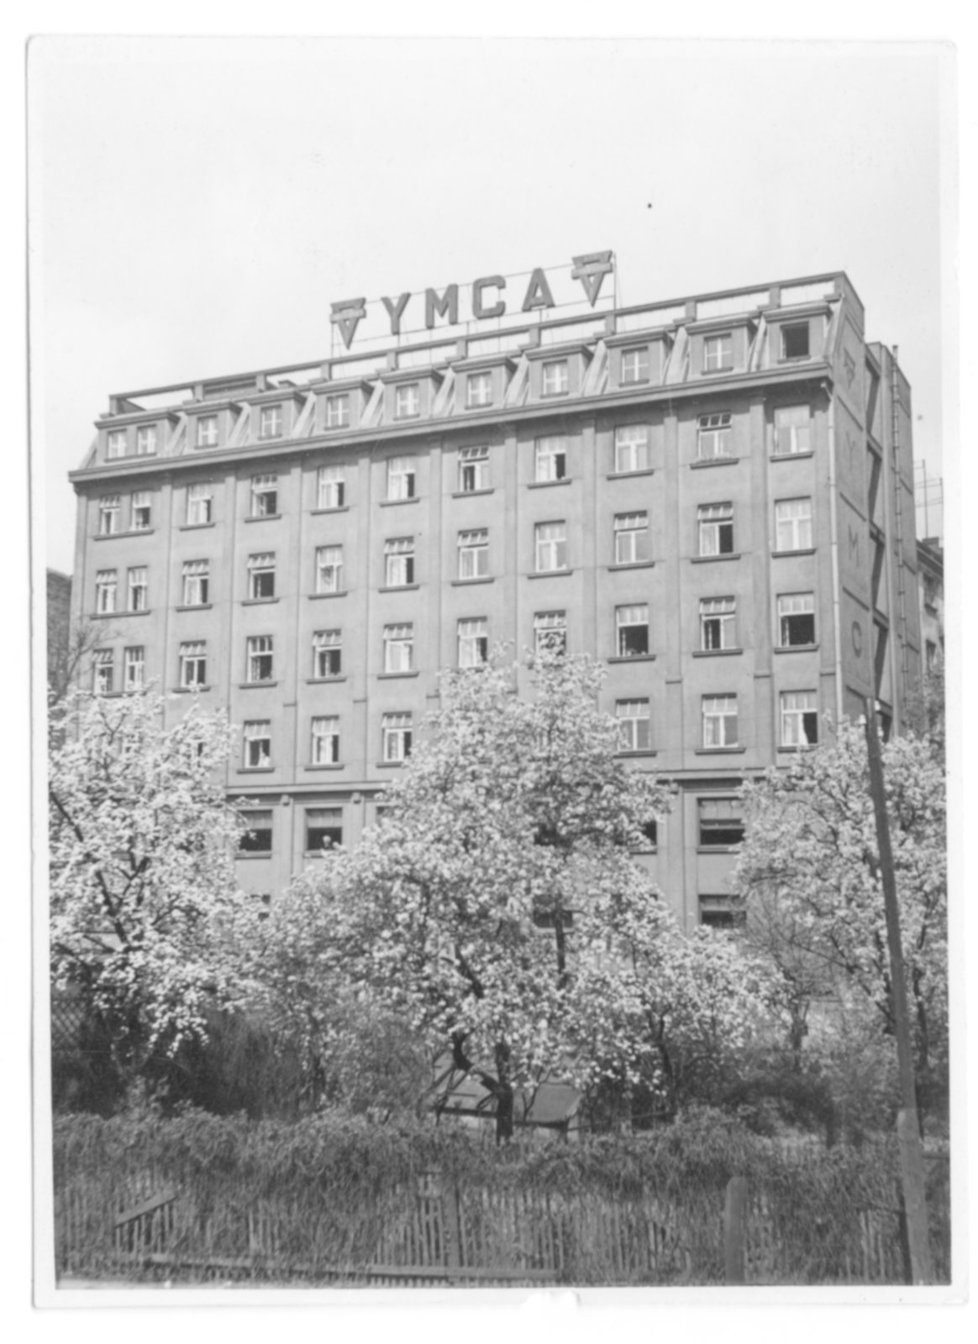 Palác YMCA tvořil v době svého vzniku dominantu v širokém okolí, fotografie zadního traktu budovy.